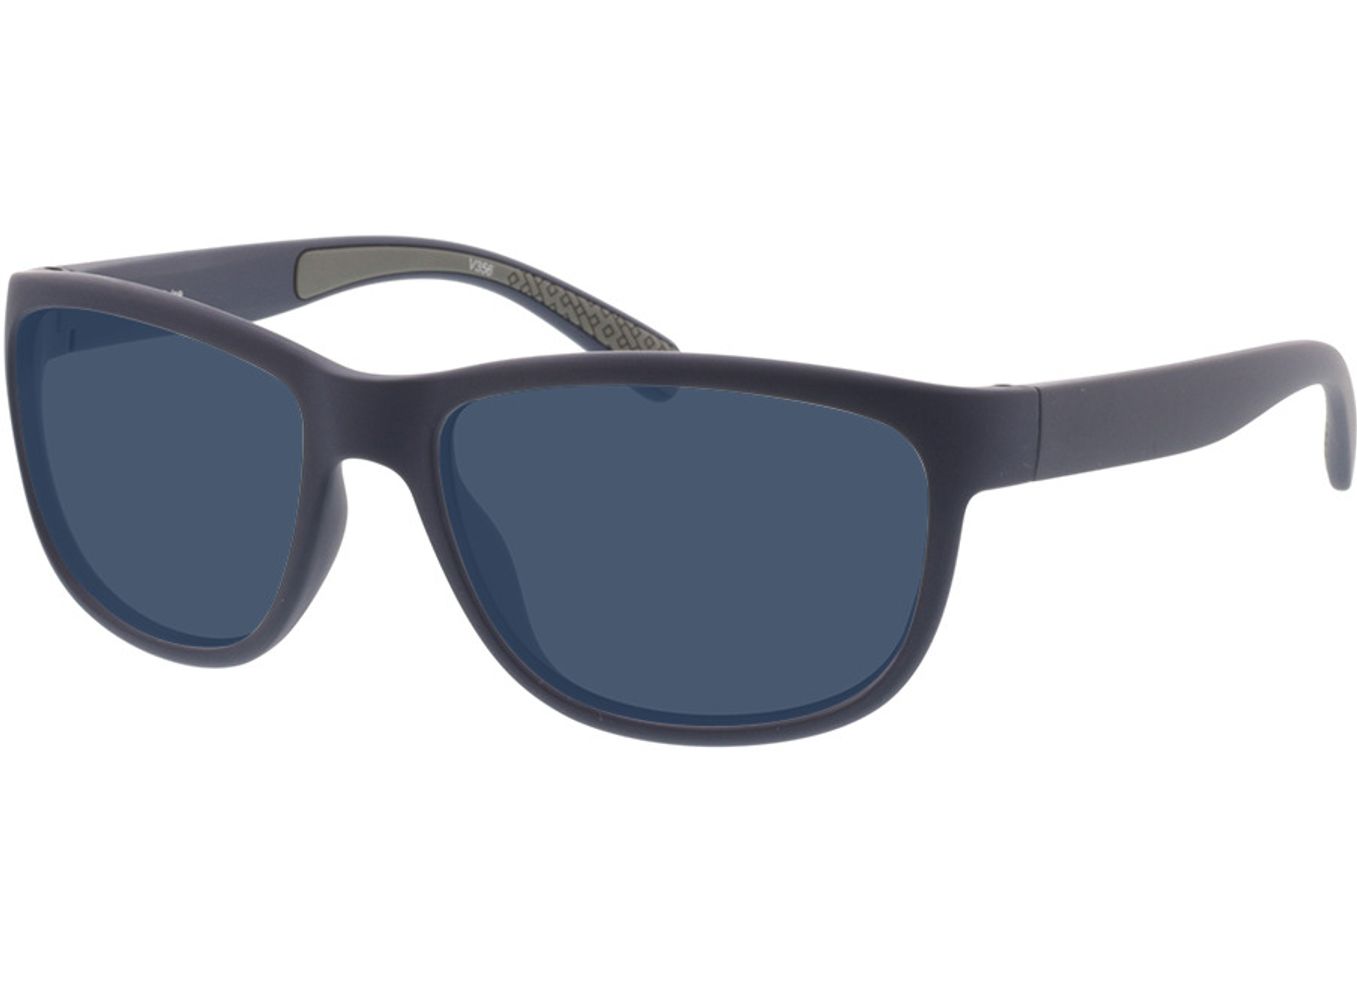 Pulse - matt dunkelblau/grau Sonnenbrille ohne Sehstärke, Vollrand, Eckig von Active by Brille24